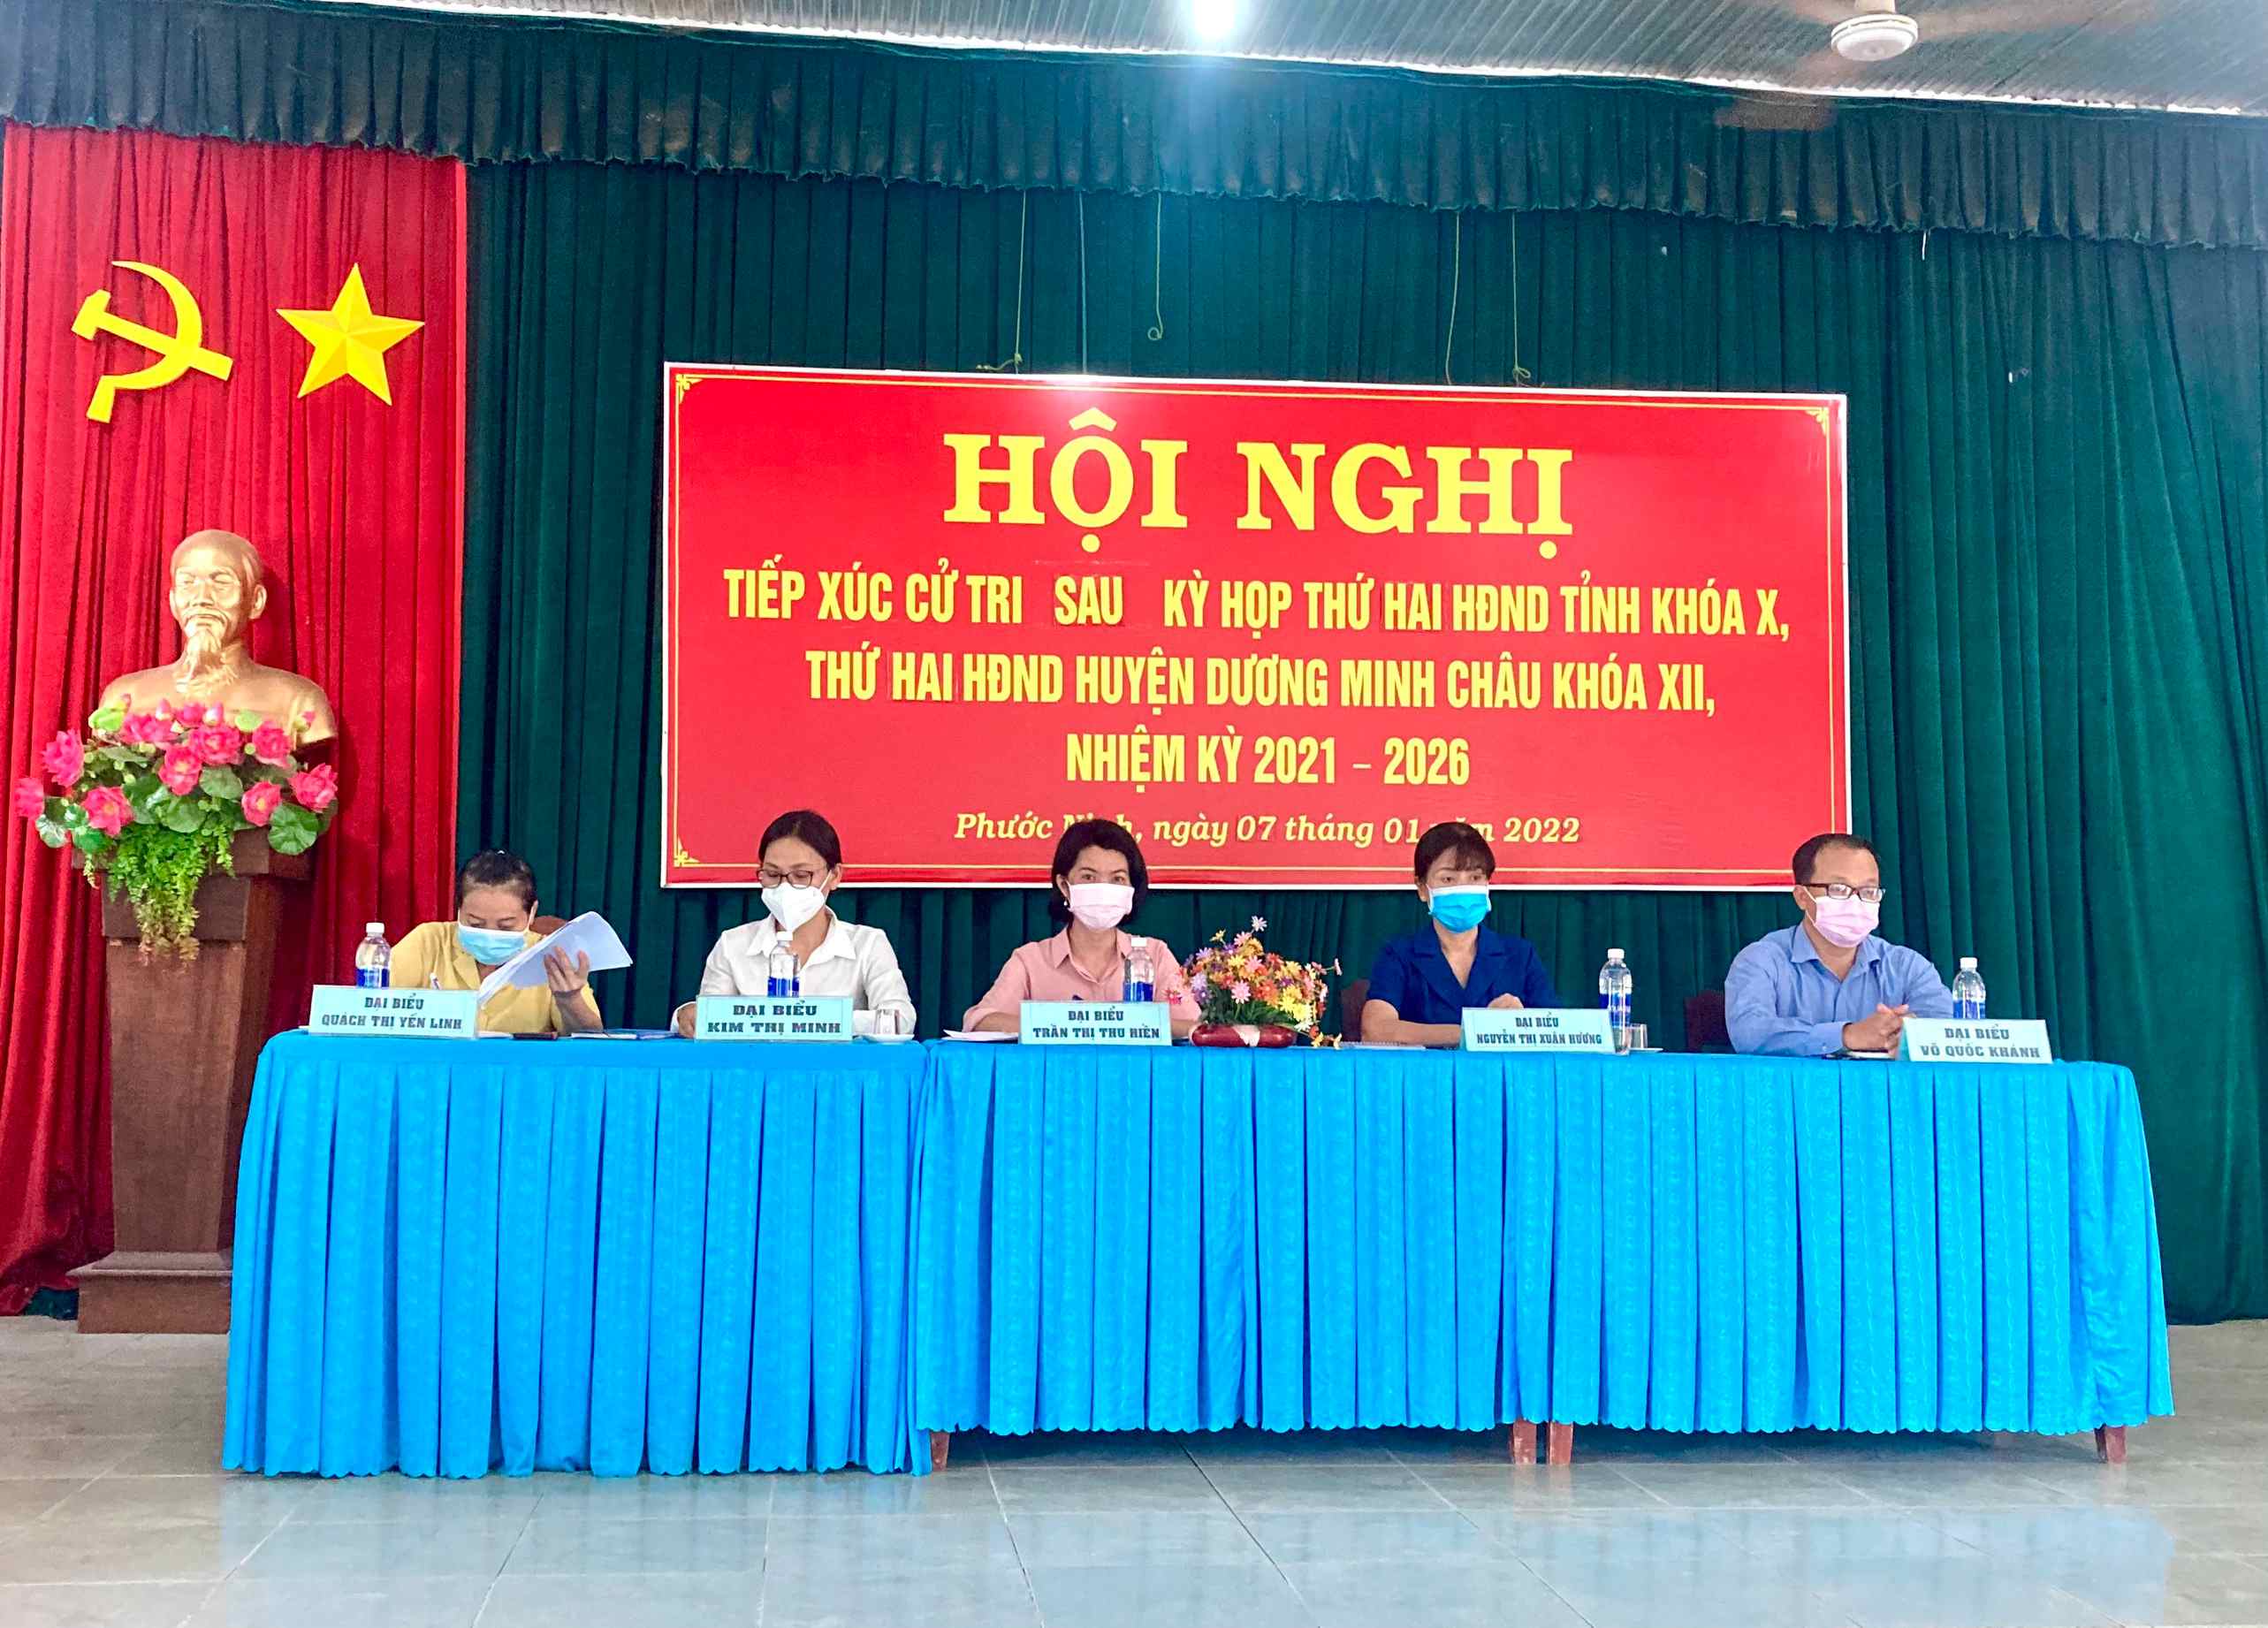 Huyện Dương Minh Châu: Cử tri xã Phước Ninh, Phước Minh quan tâm đến việc nâng cấp, sửa chữa đường giao thông